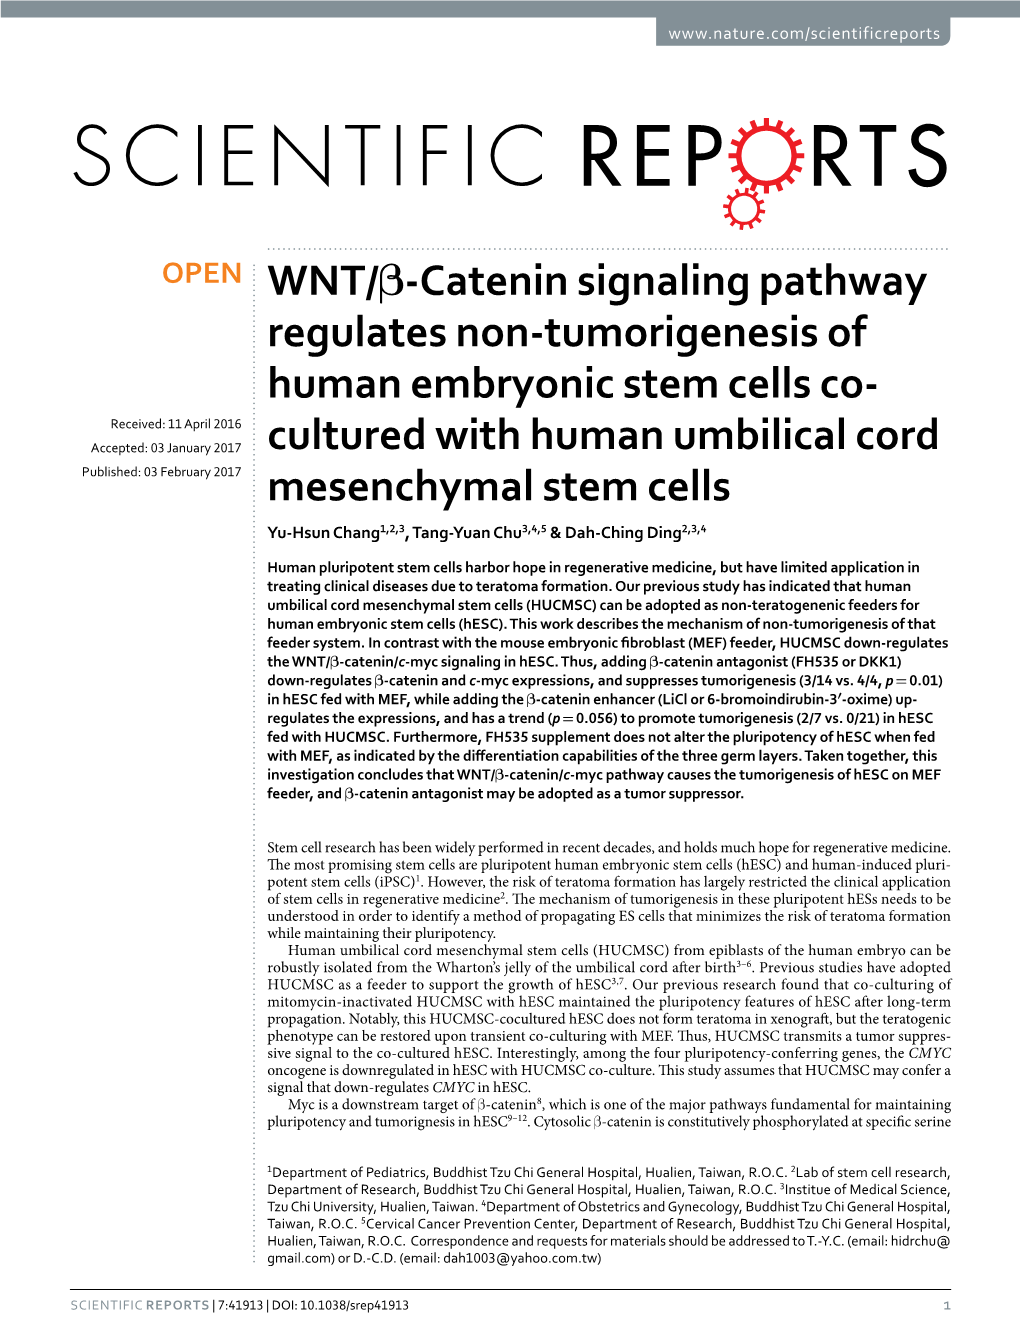 WNT/Β-Catenin Signaling Pathway Regulates Non-Tumorigenesis Of